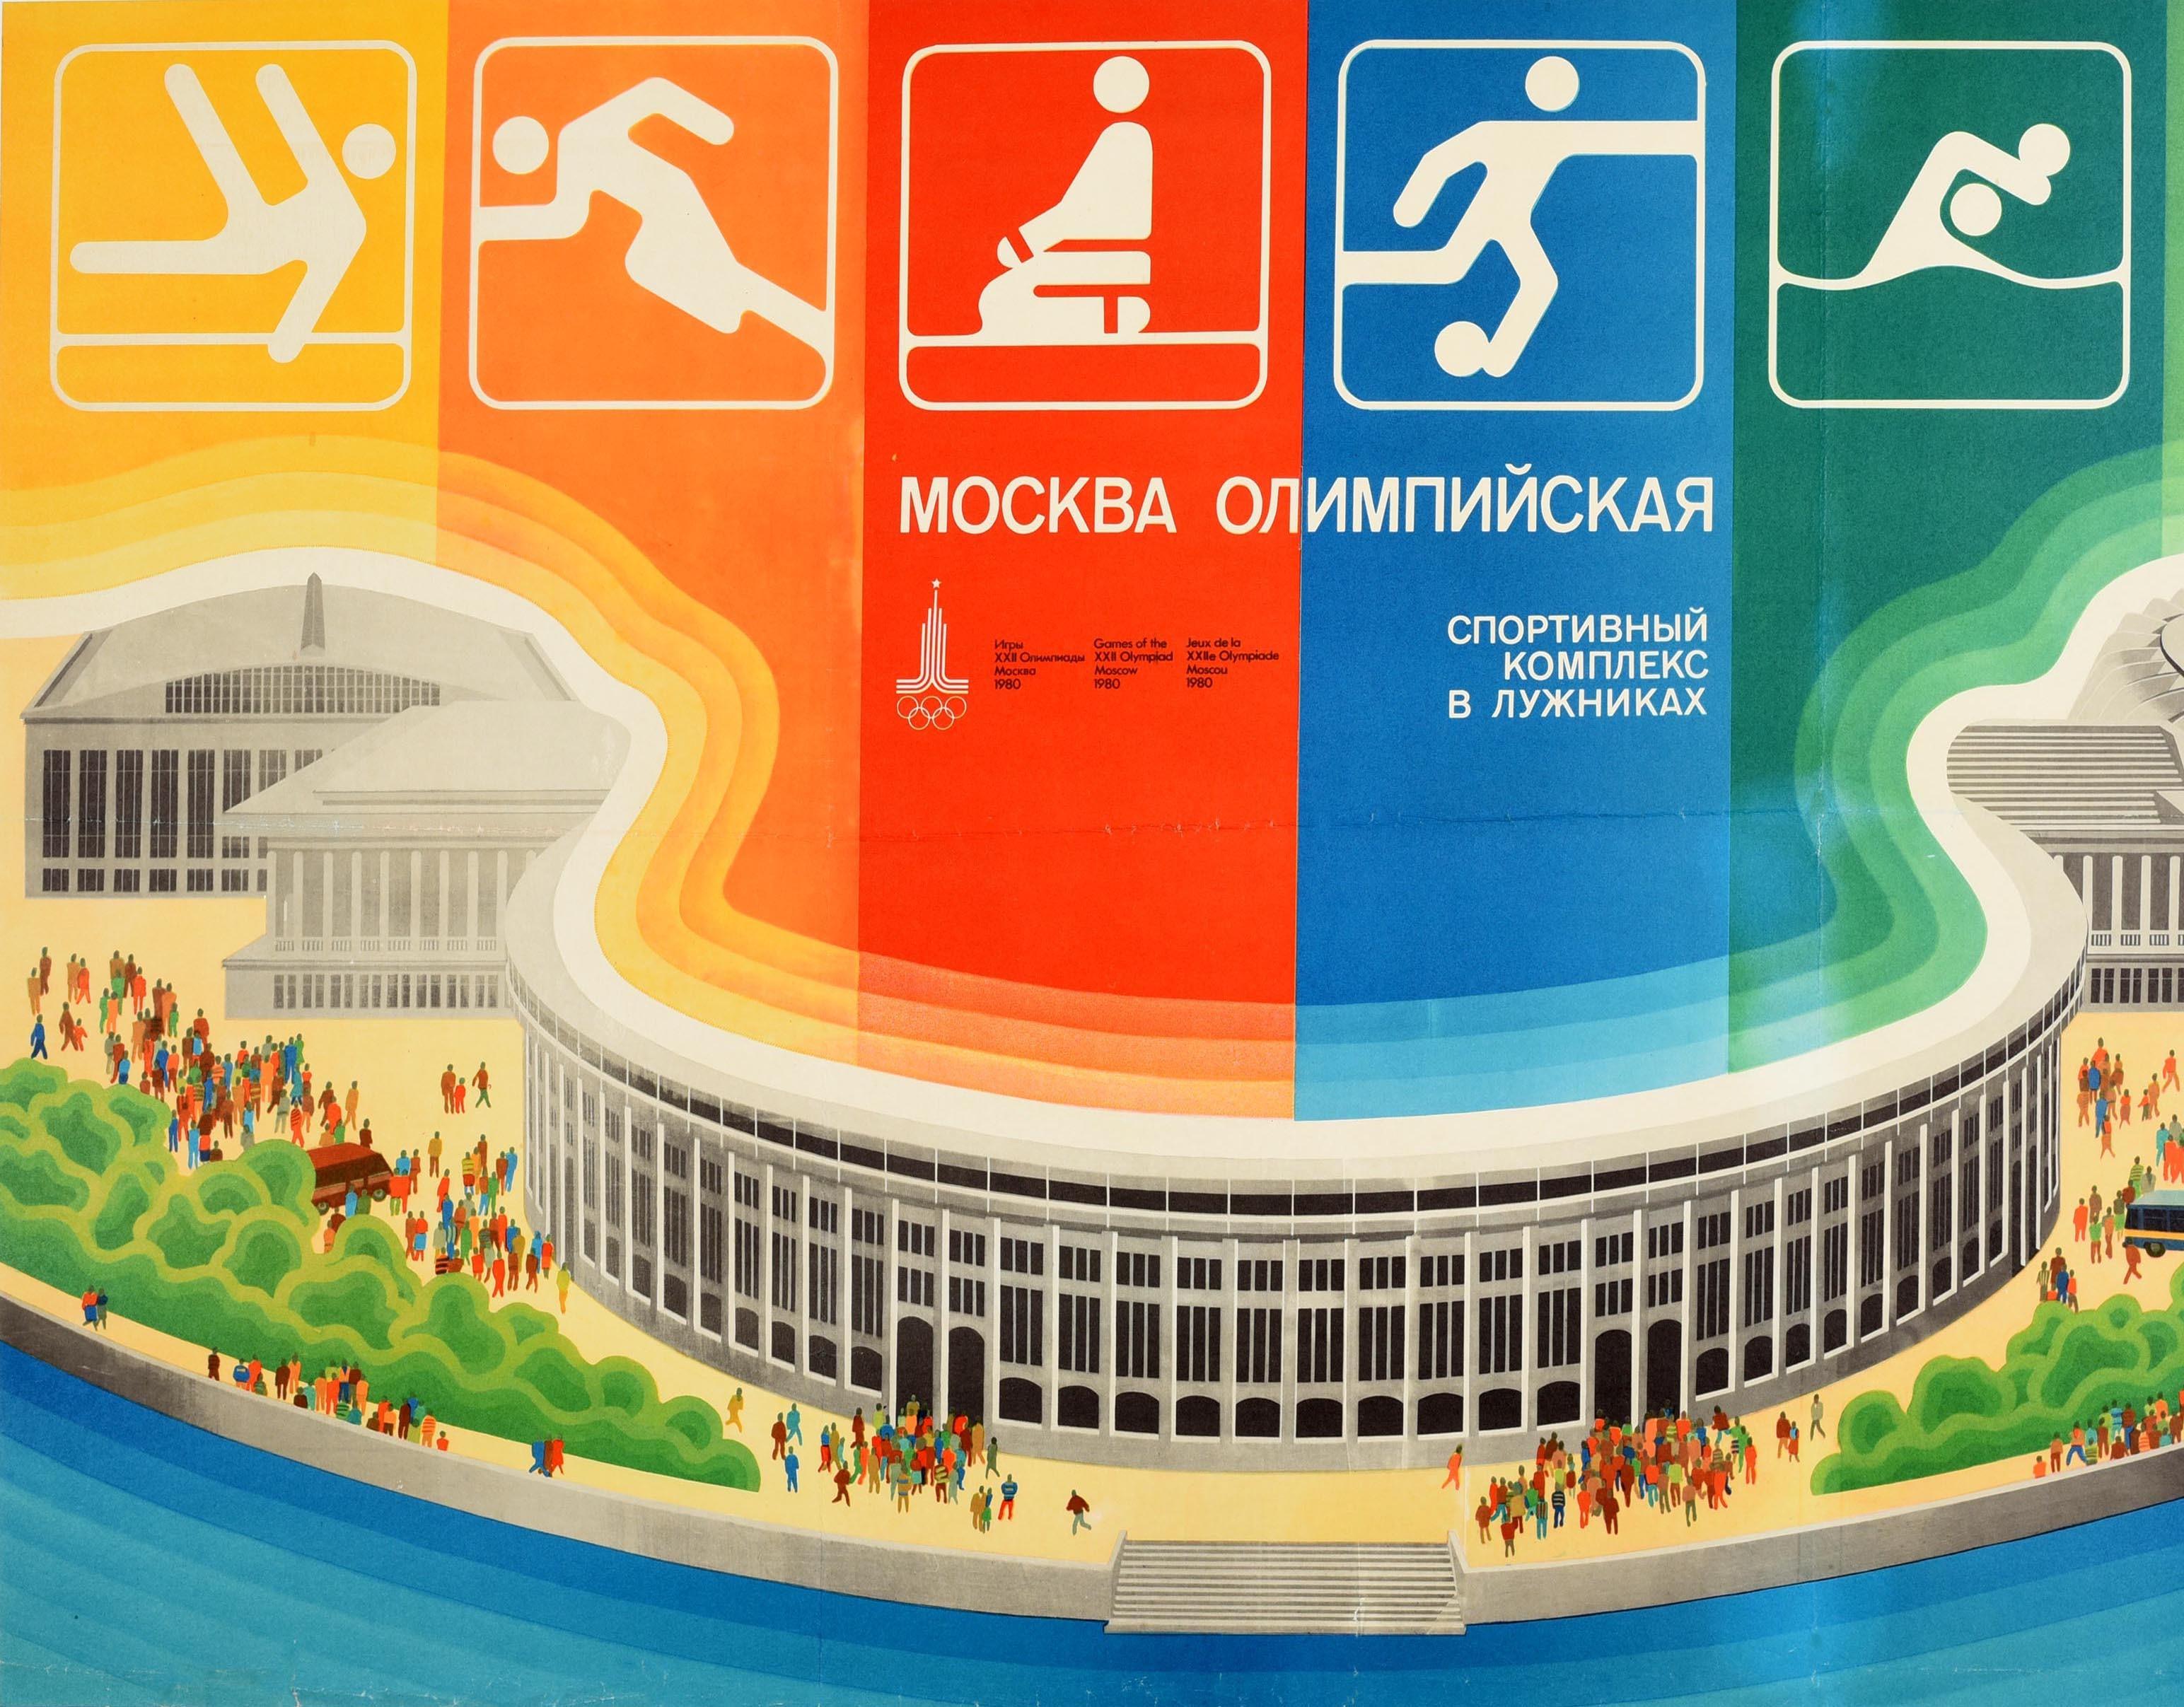 Original-Sportplakat zur Werbung für die 22. Olympischen Sommerspiele / Spiele der XXII. Olympiade 1980 in Moskau, Russland, mit Menschen, die vor dem Dynamo-Stadion spazieren gehen, üppigen grünen Bäumen im Vordergrund, mit dem Text und den